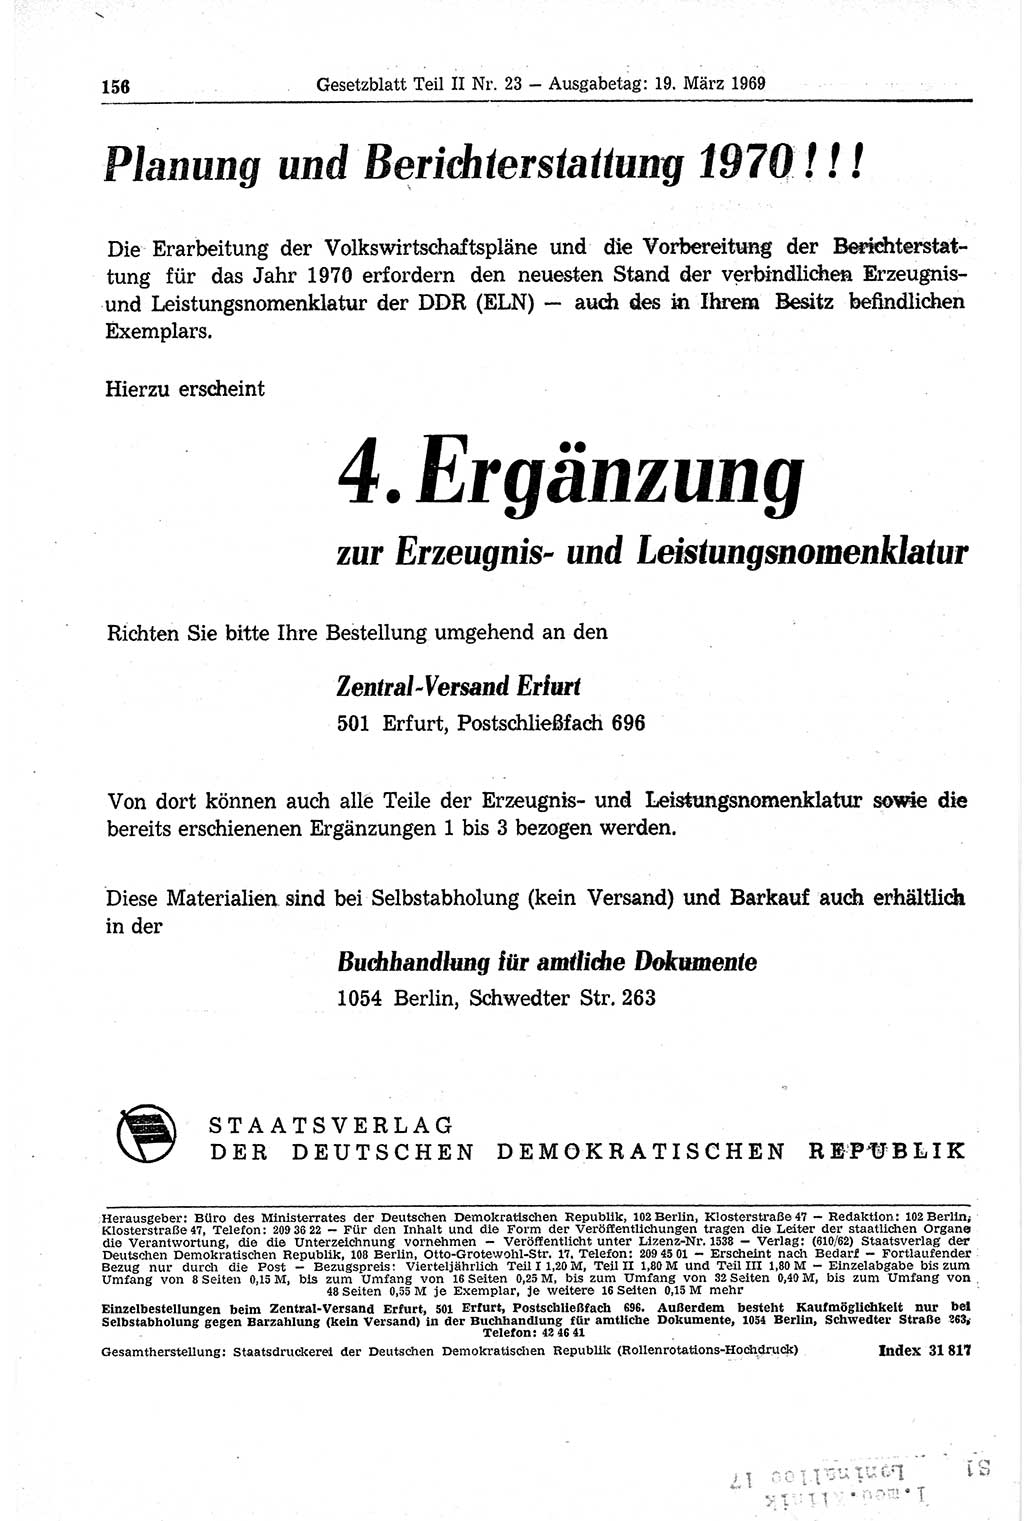 Gesetzblatt (GBl.) der Deutschen Demokratischen Republik (DDR) Teil ⅠⅠ 1969, Seite 156 (GBl. DDR ⅠⅠ 1969, S. 156)